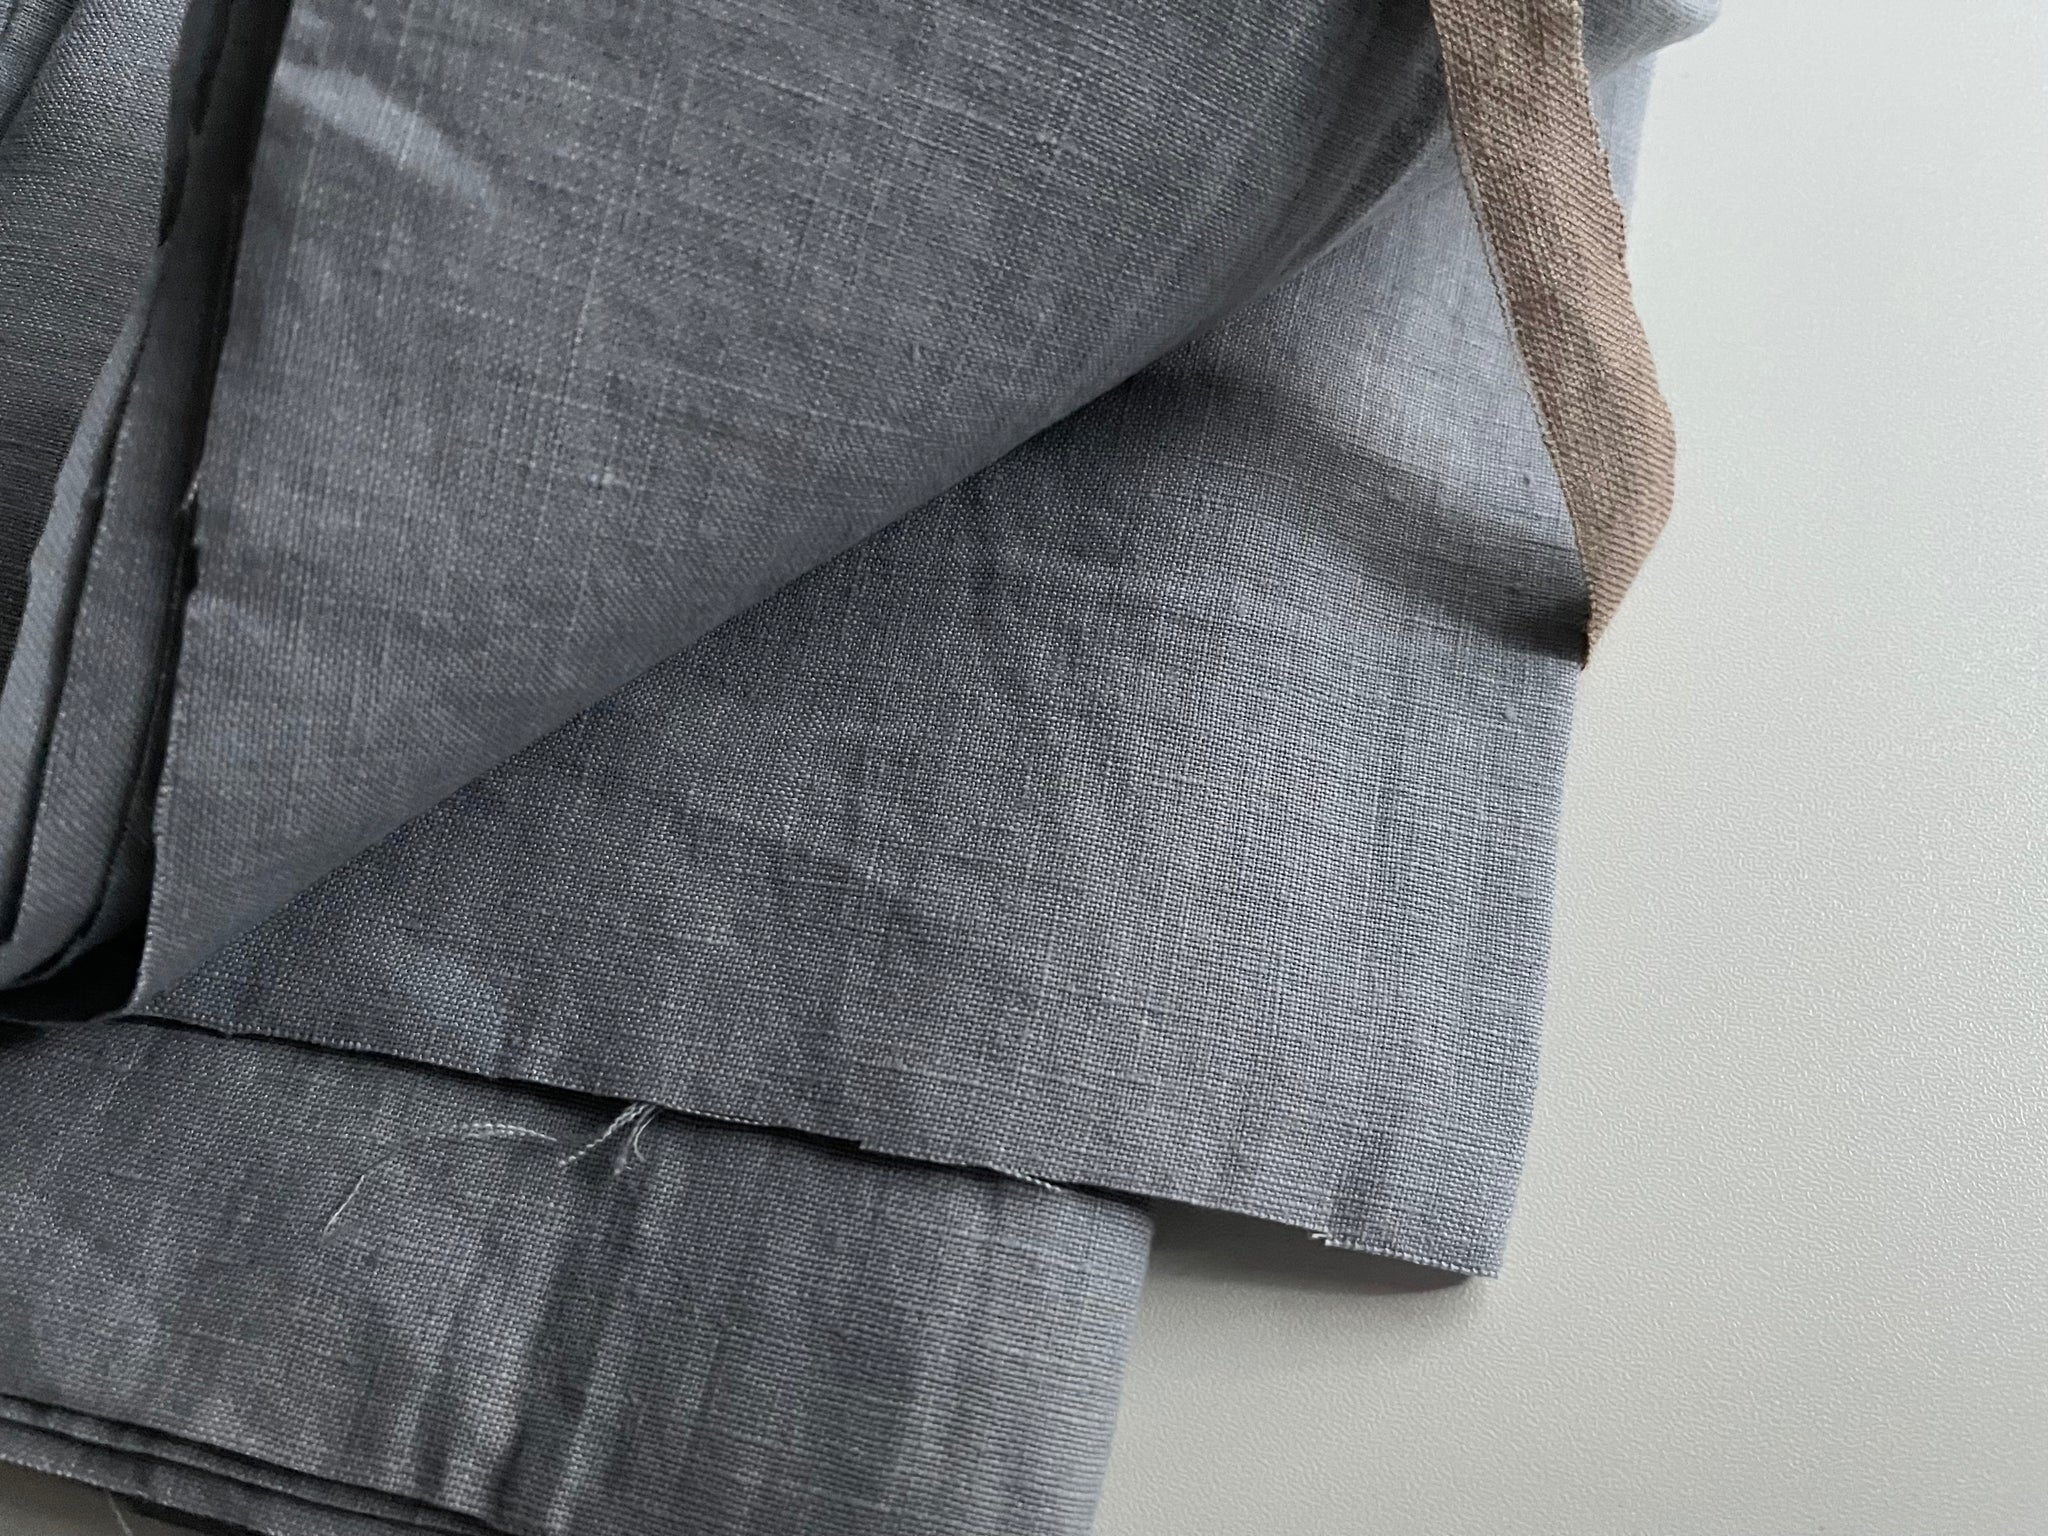 Linen Fabric Remnants - Bluish Grey